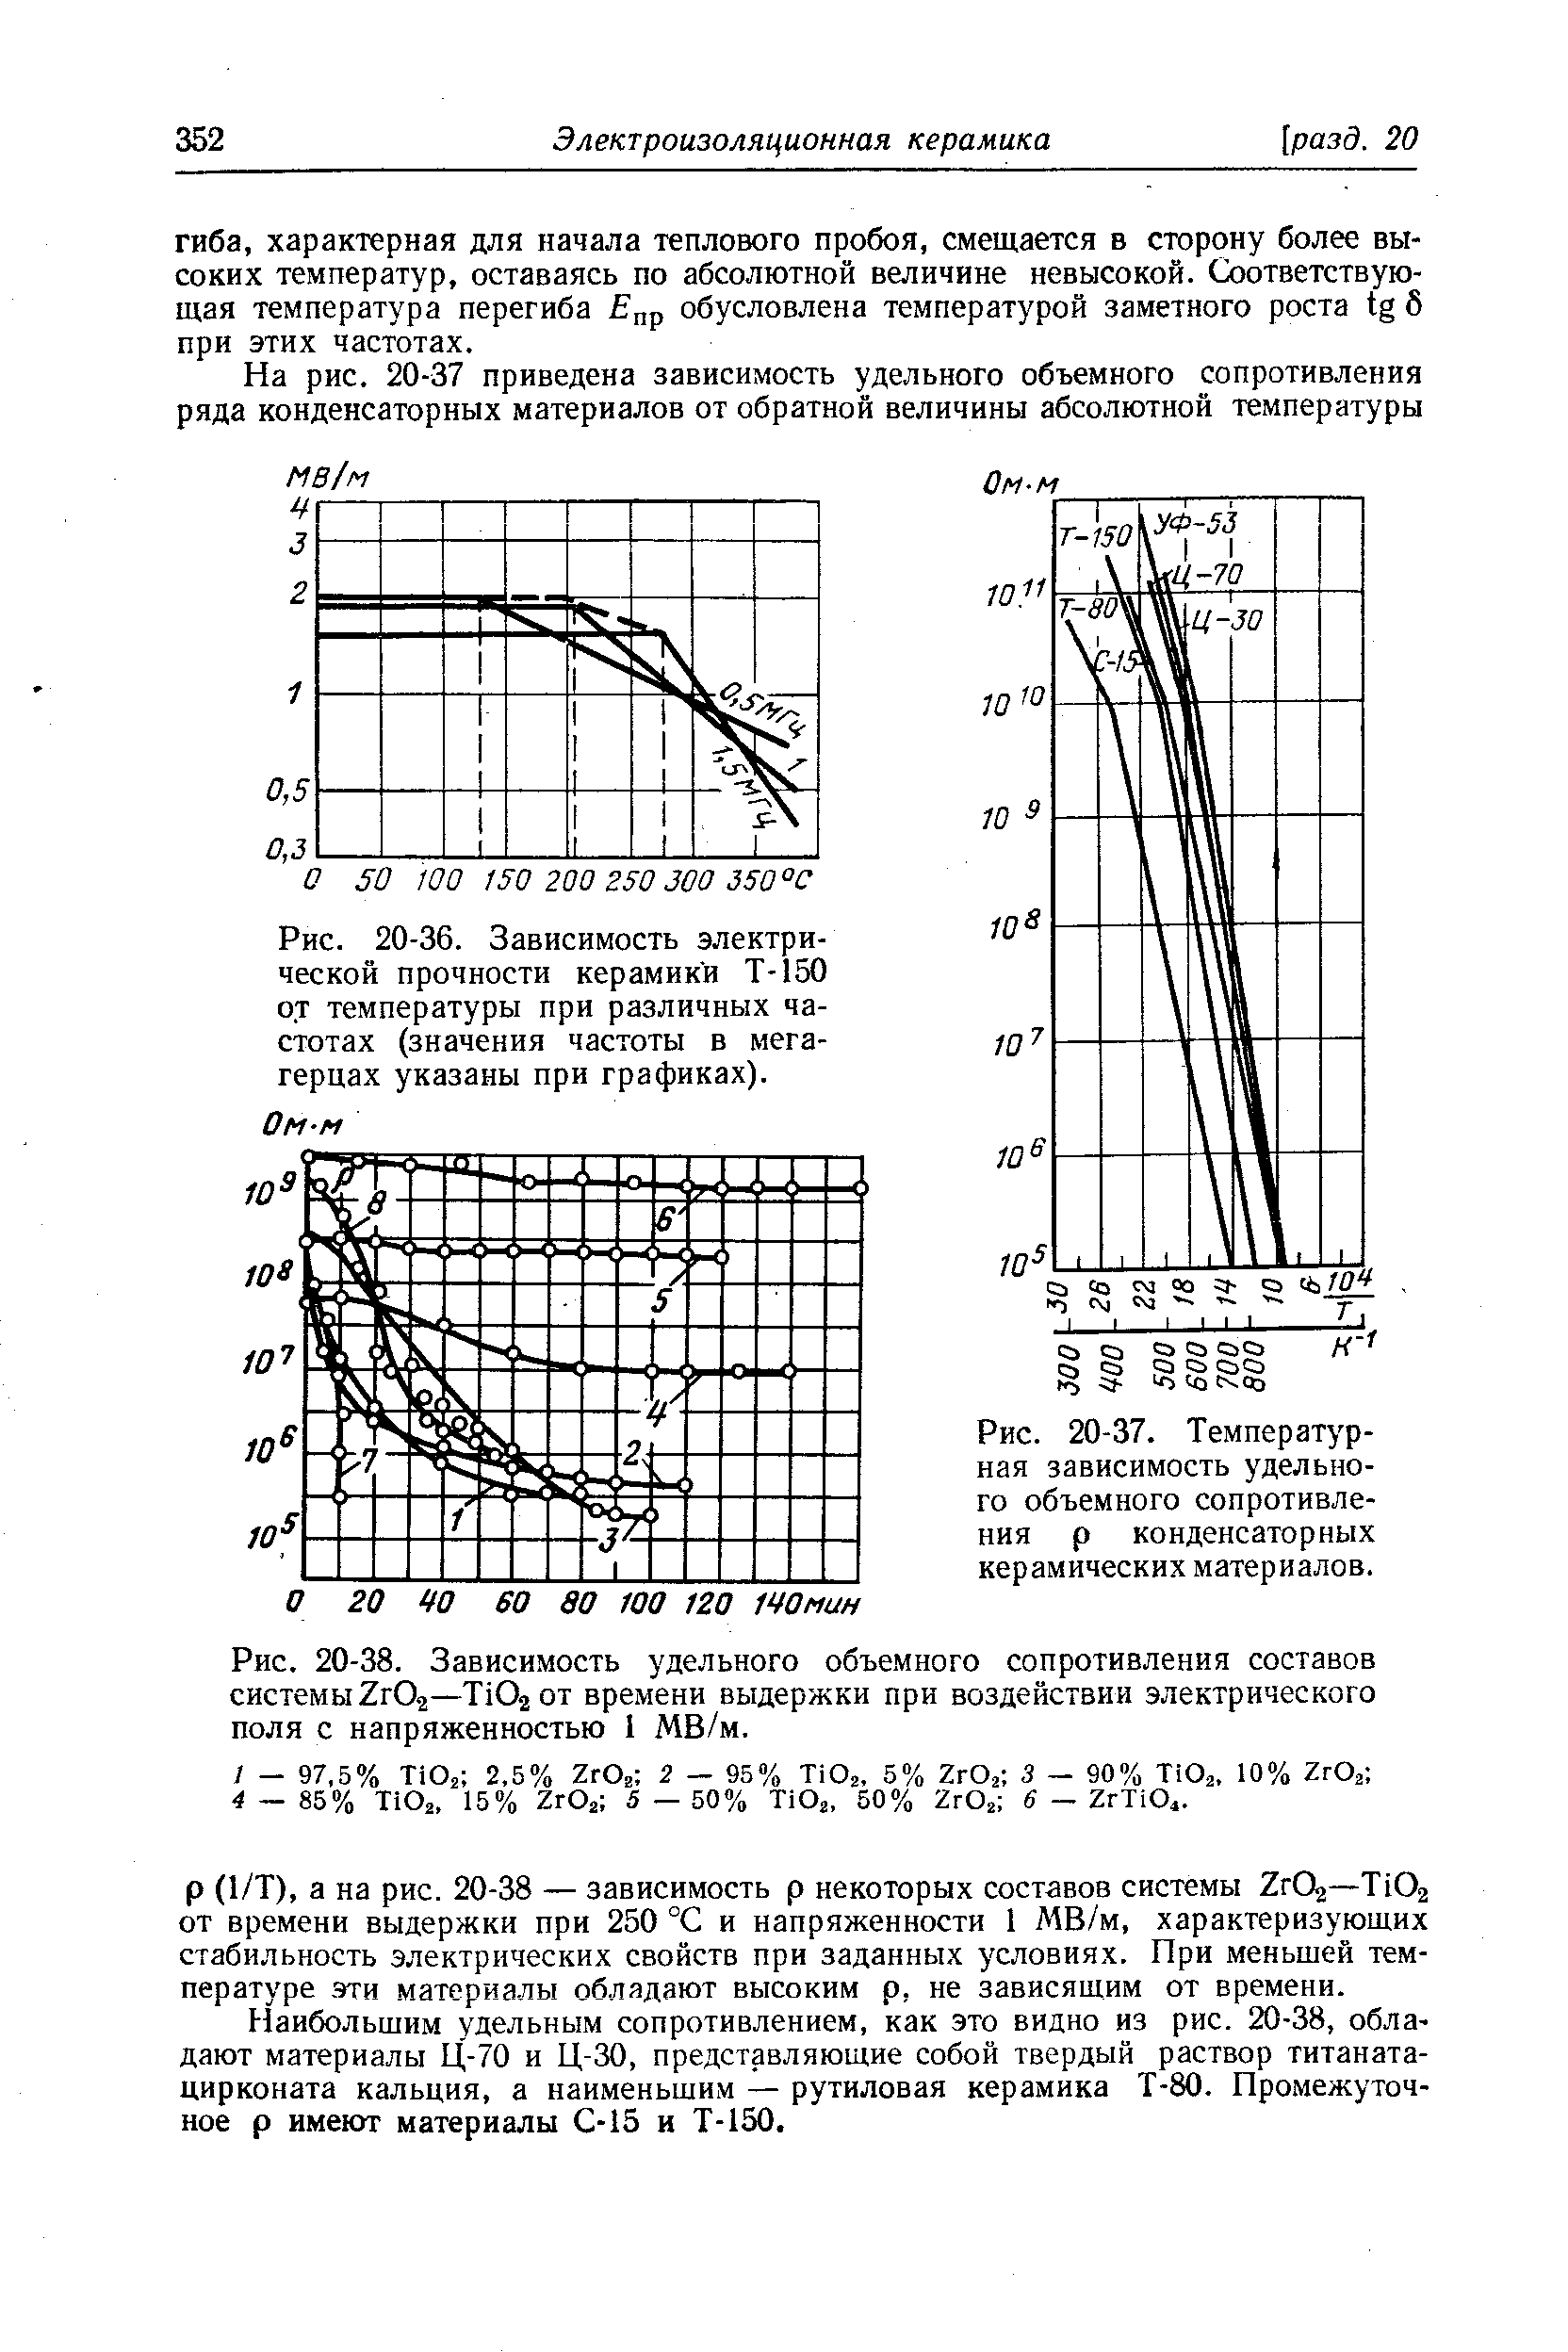 Рис. 20-37. <a href="/info/191882">Температурная зависимость</a> <a href="/info/164010">удельного объемного сопротивления</a> р конденсаторных керамических материалов.
